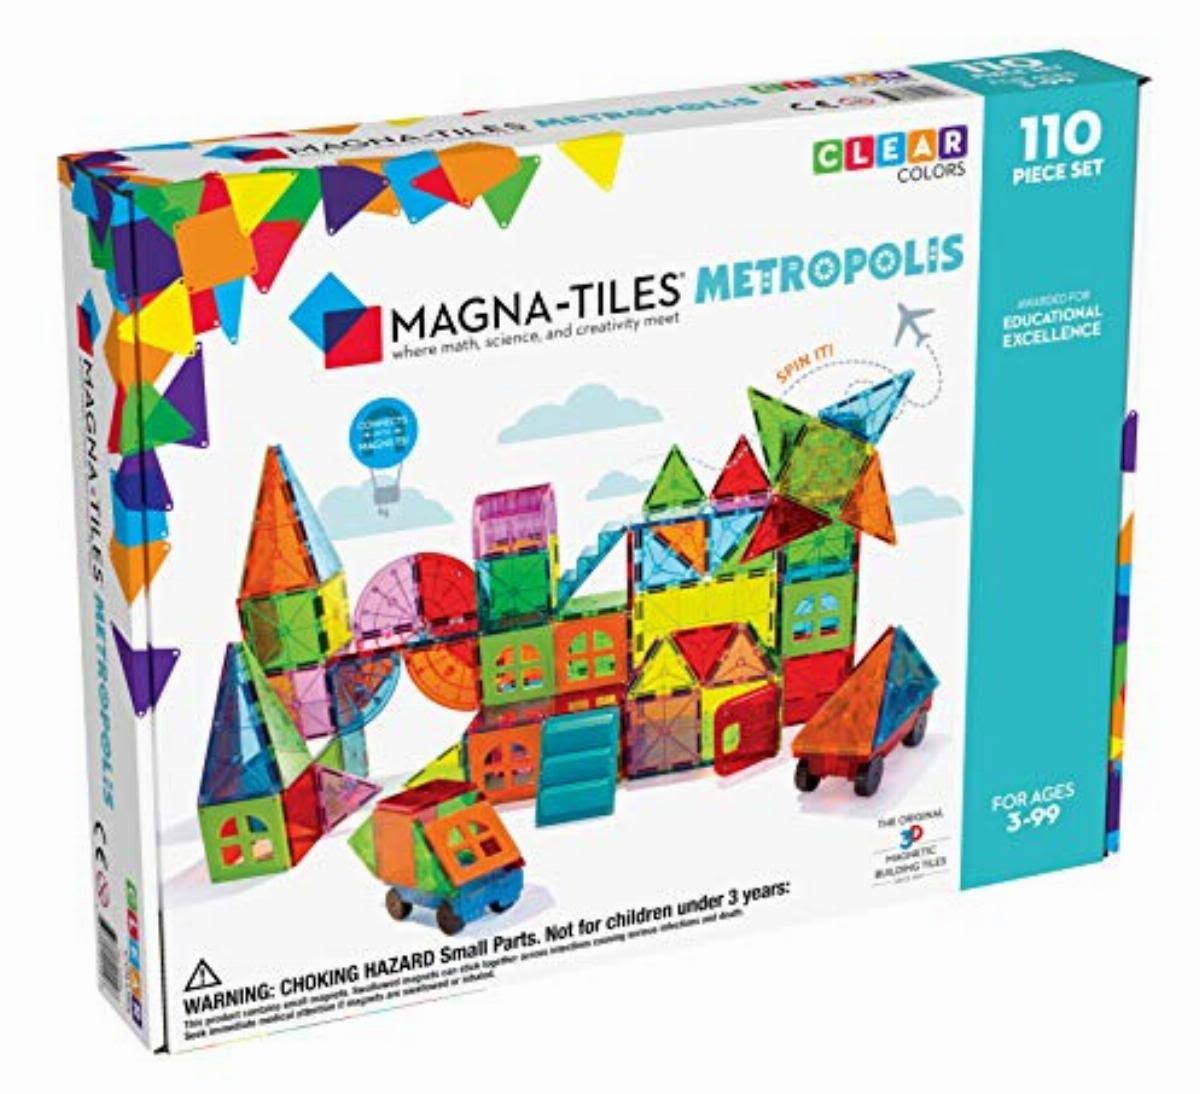 Magna Tiles Metropolis 110 Piece Set 3d Magnetic Building Tiles